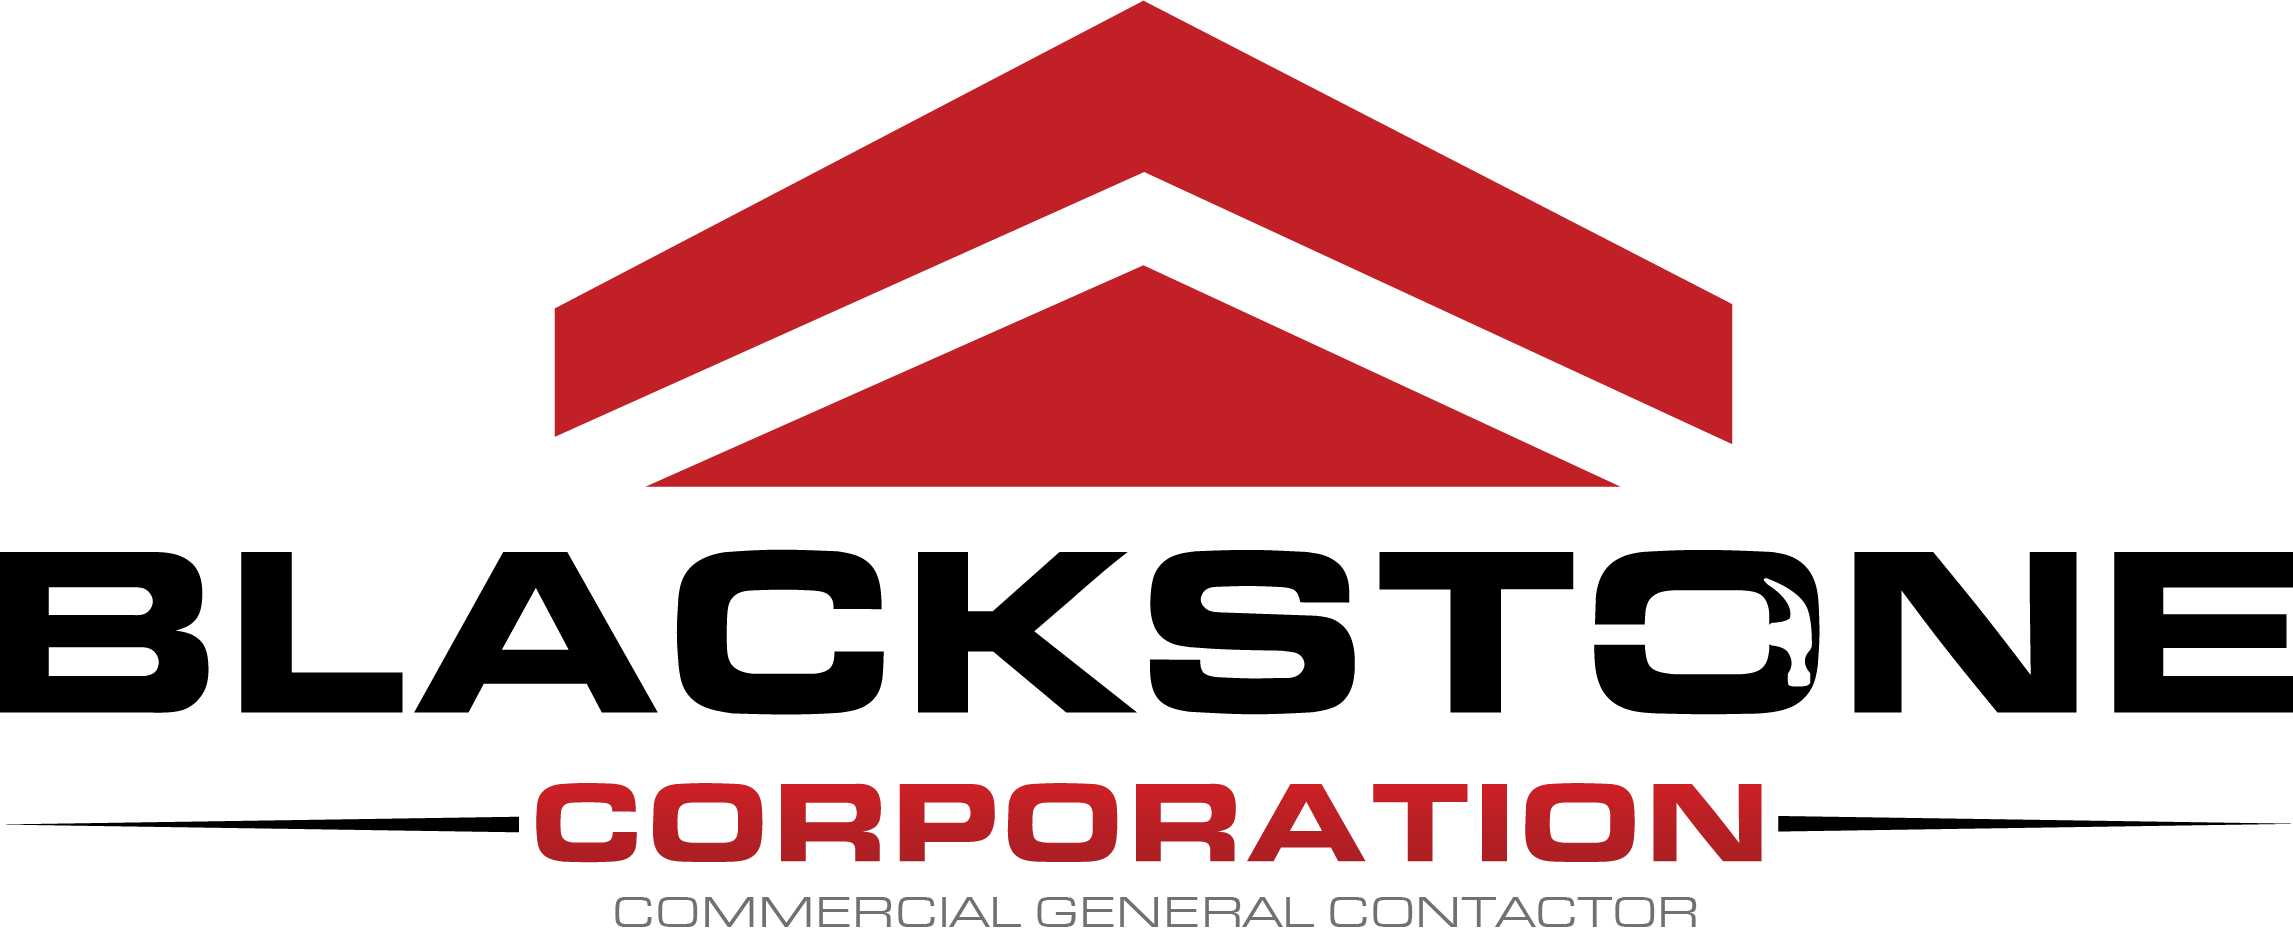 Michigan Commercial Construction - Blackstone General Contractor